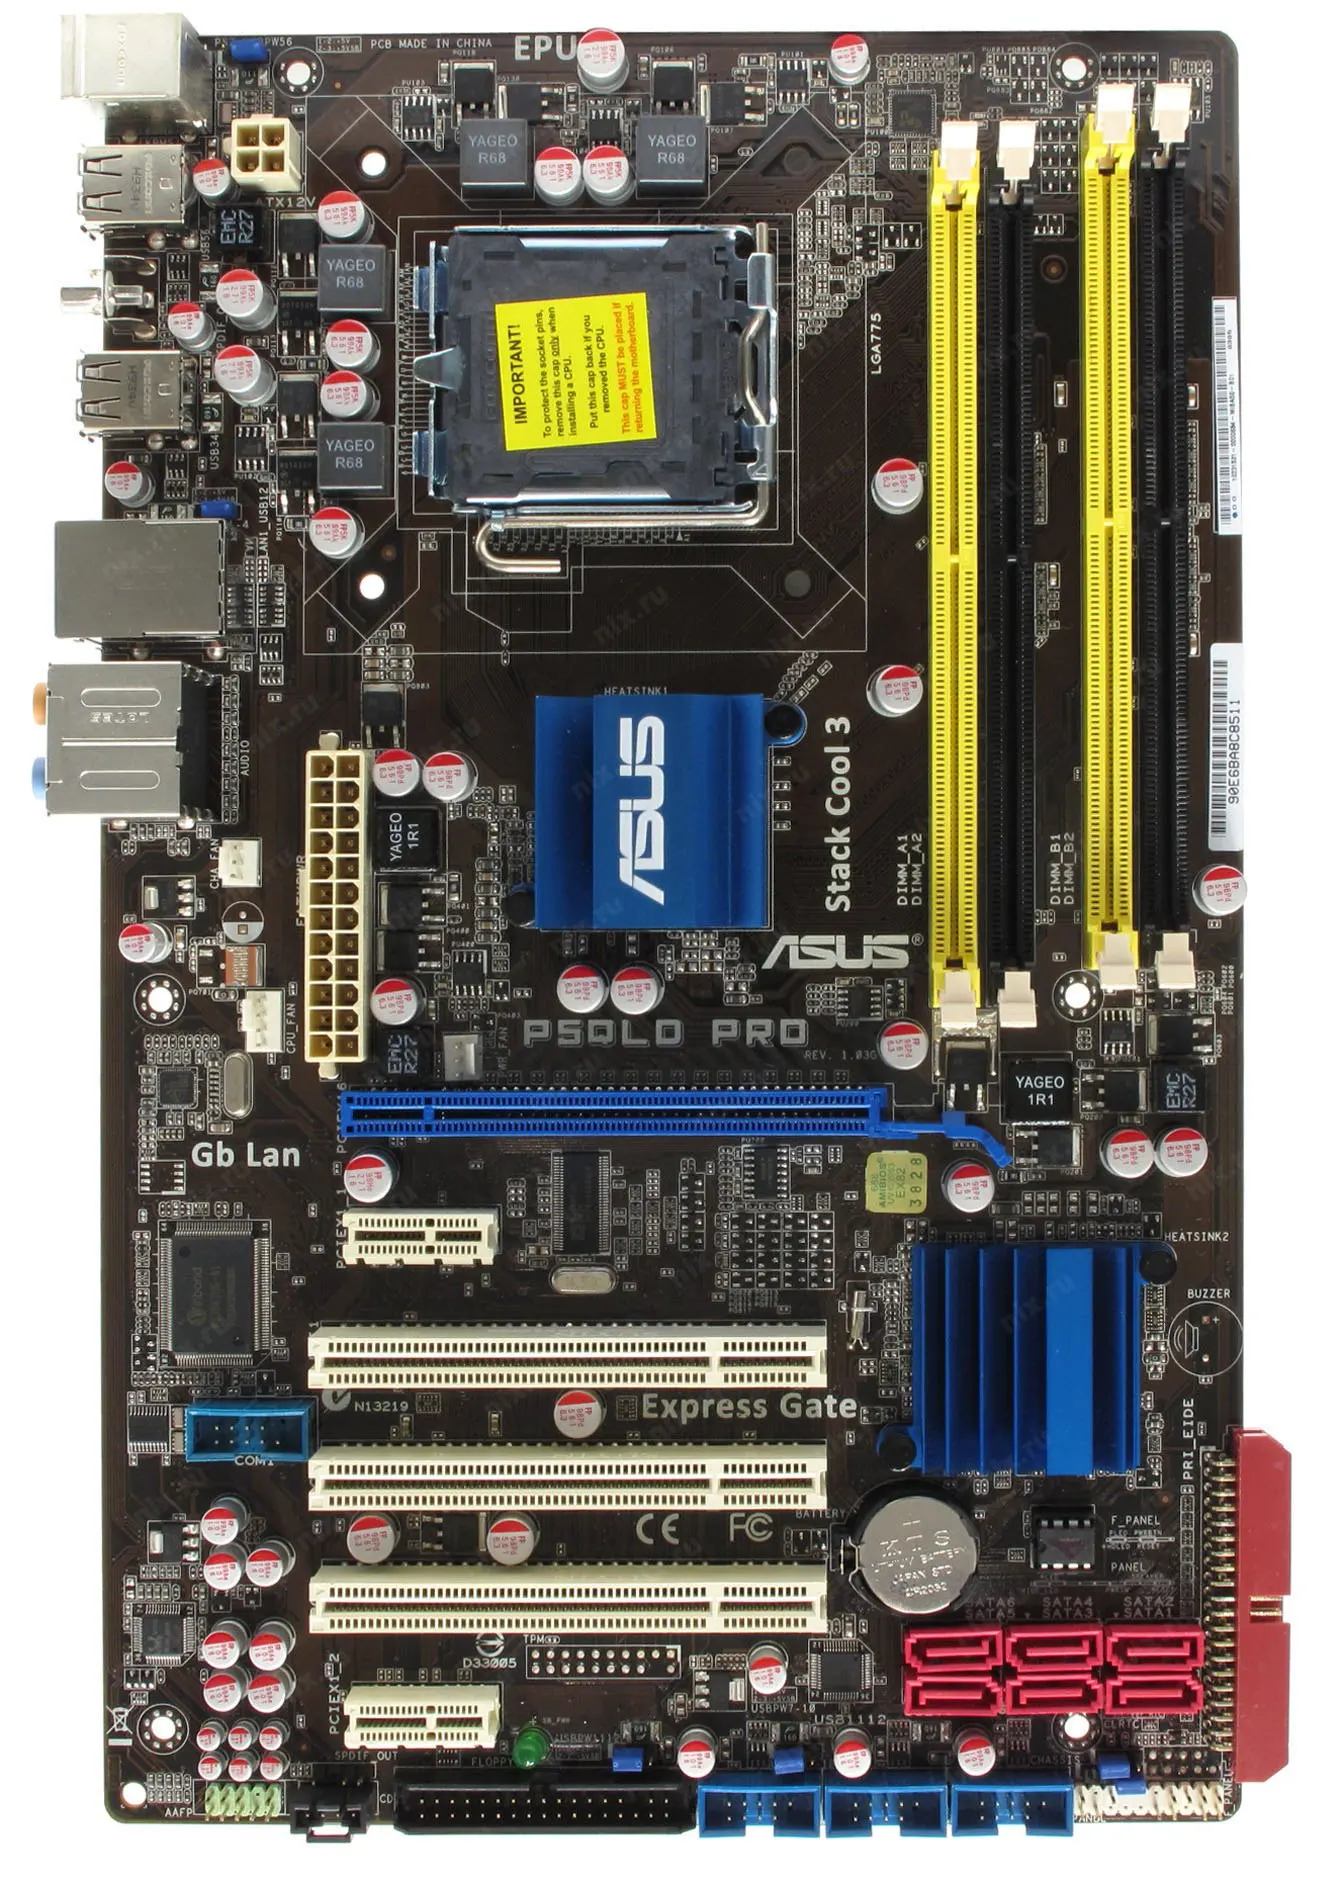 ASUS P5QLD PRO LGA 775 Motherboard DDR2 16GB Intel P43 Motherboard  USB2.0 SATA 2 ATX  For Core E1400 Core 2 Duo E4500 cpus